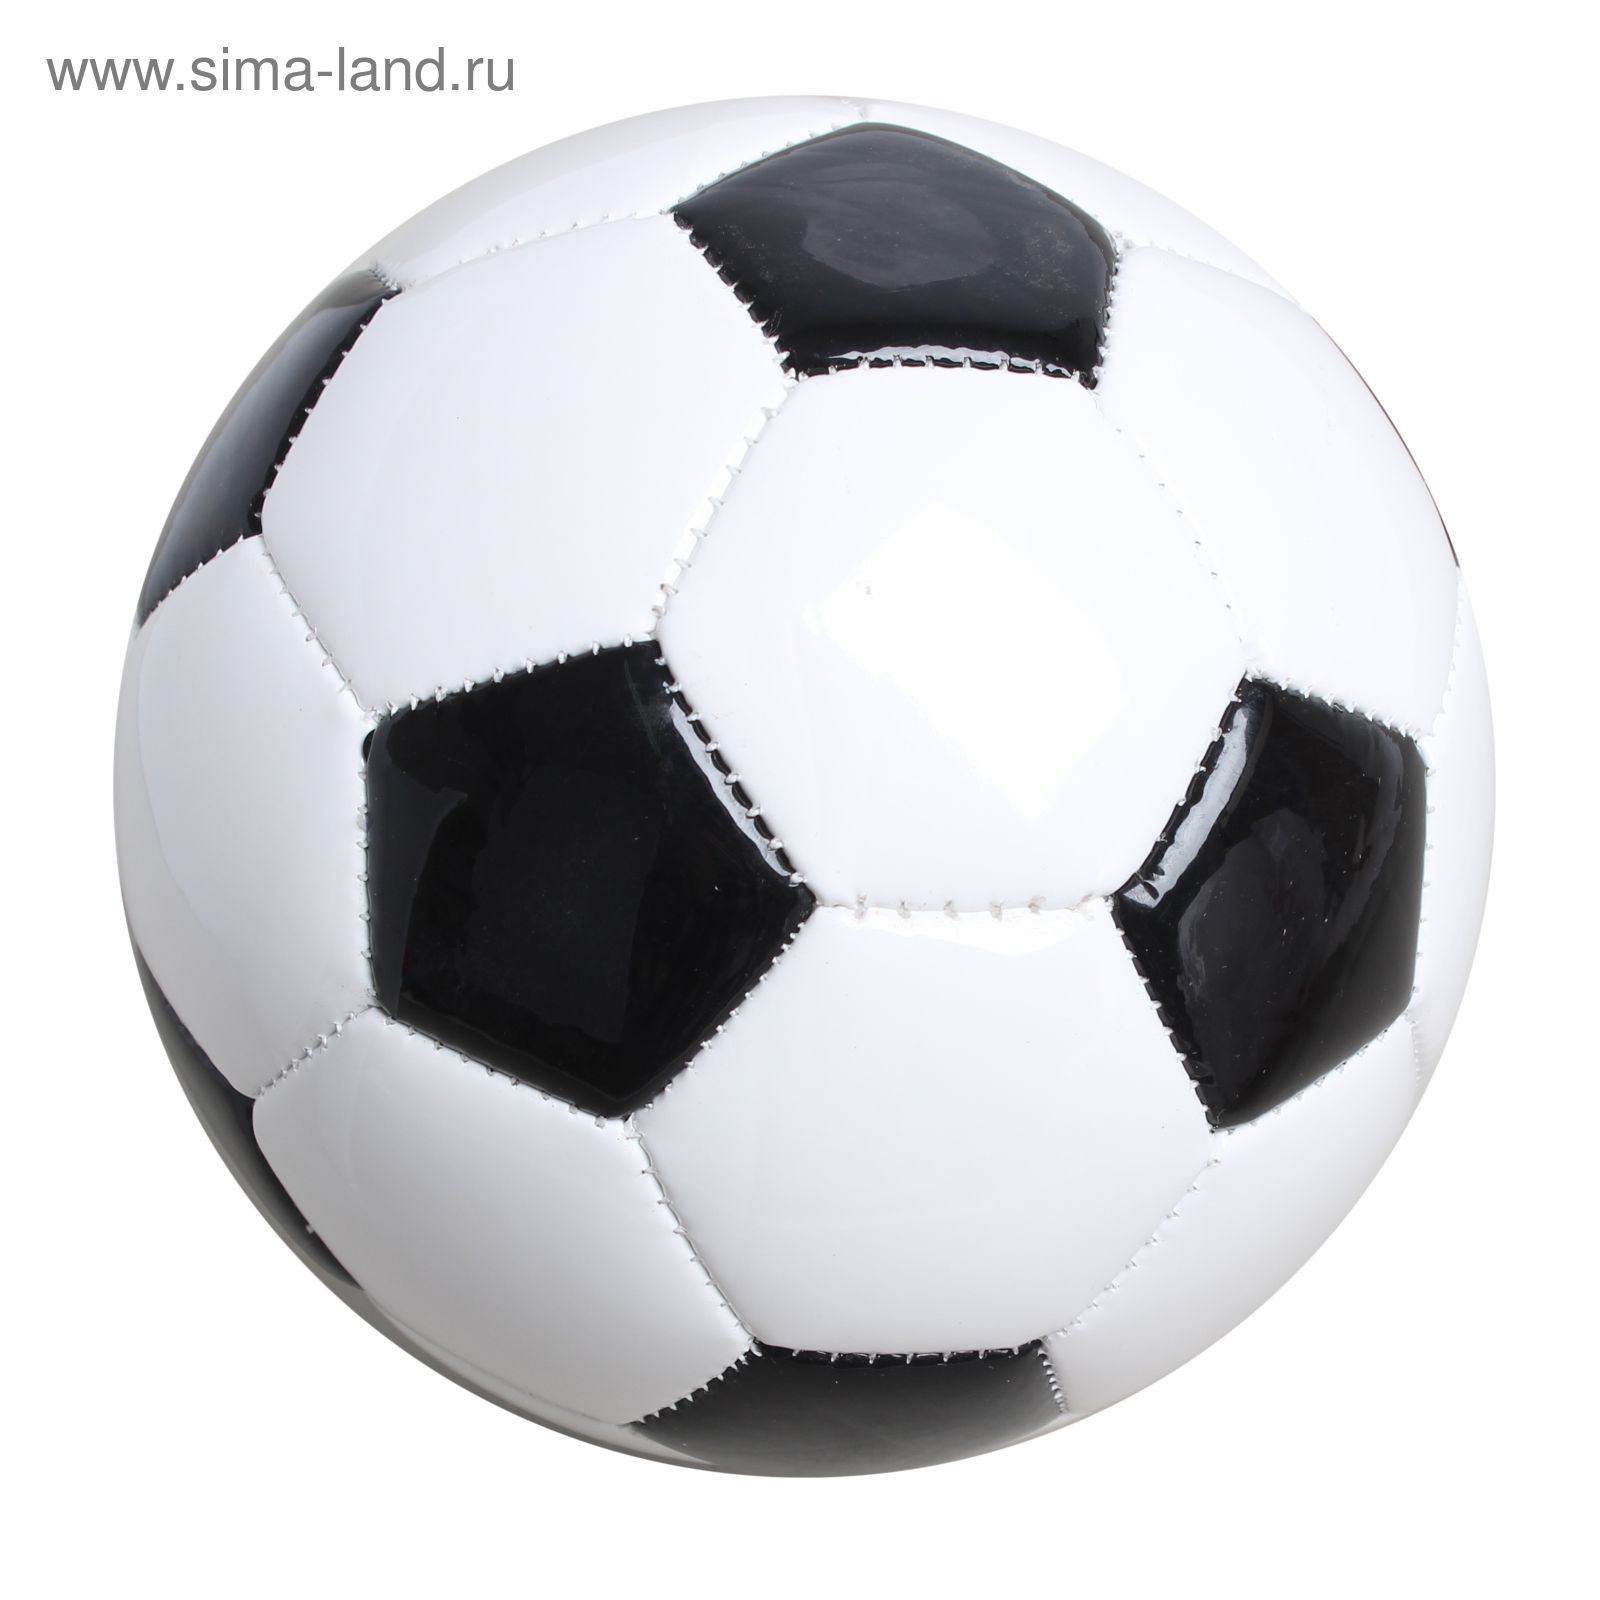 Мяч футбольный, 2 подслоя, PVC, машинная сшивка, размер 2, цвета микс